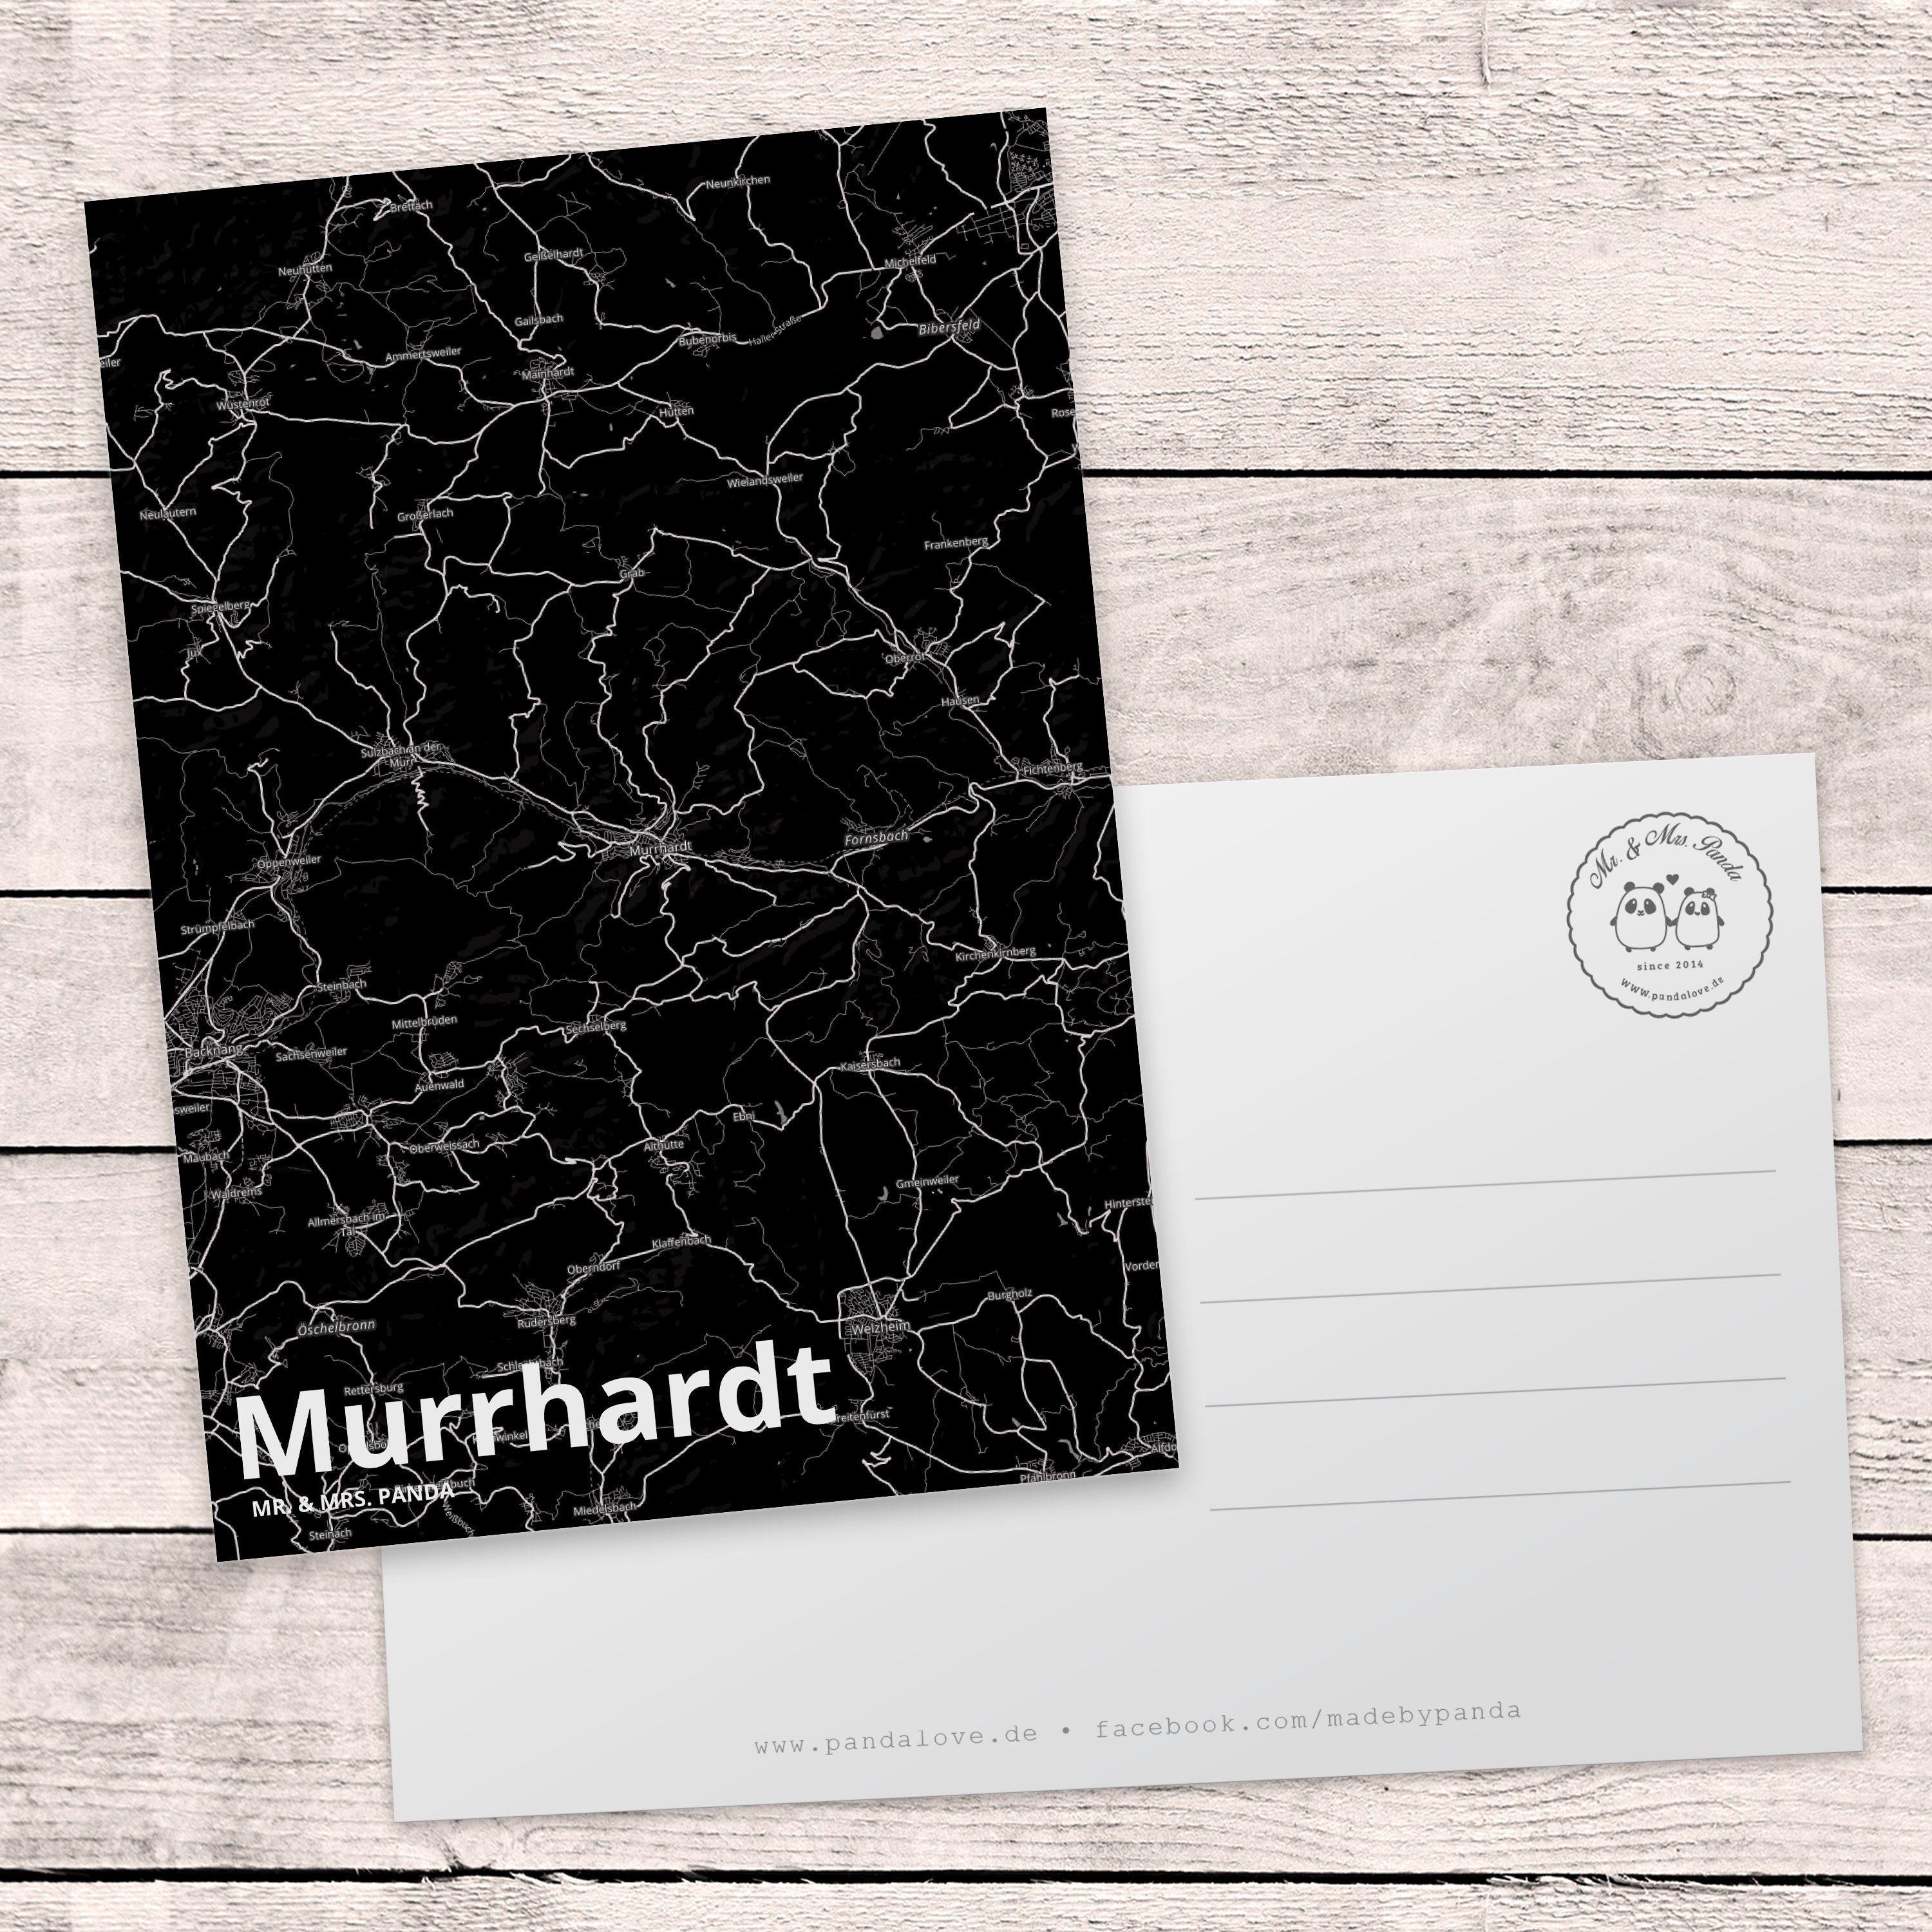 Mr. & Mrs. - Einladung Murrhardt Einladungskarte, Ansichtskarte, Geschenk, Panda Postkarte Ort